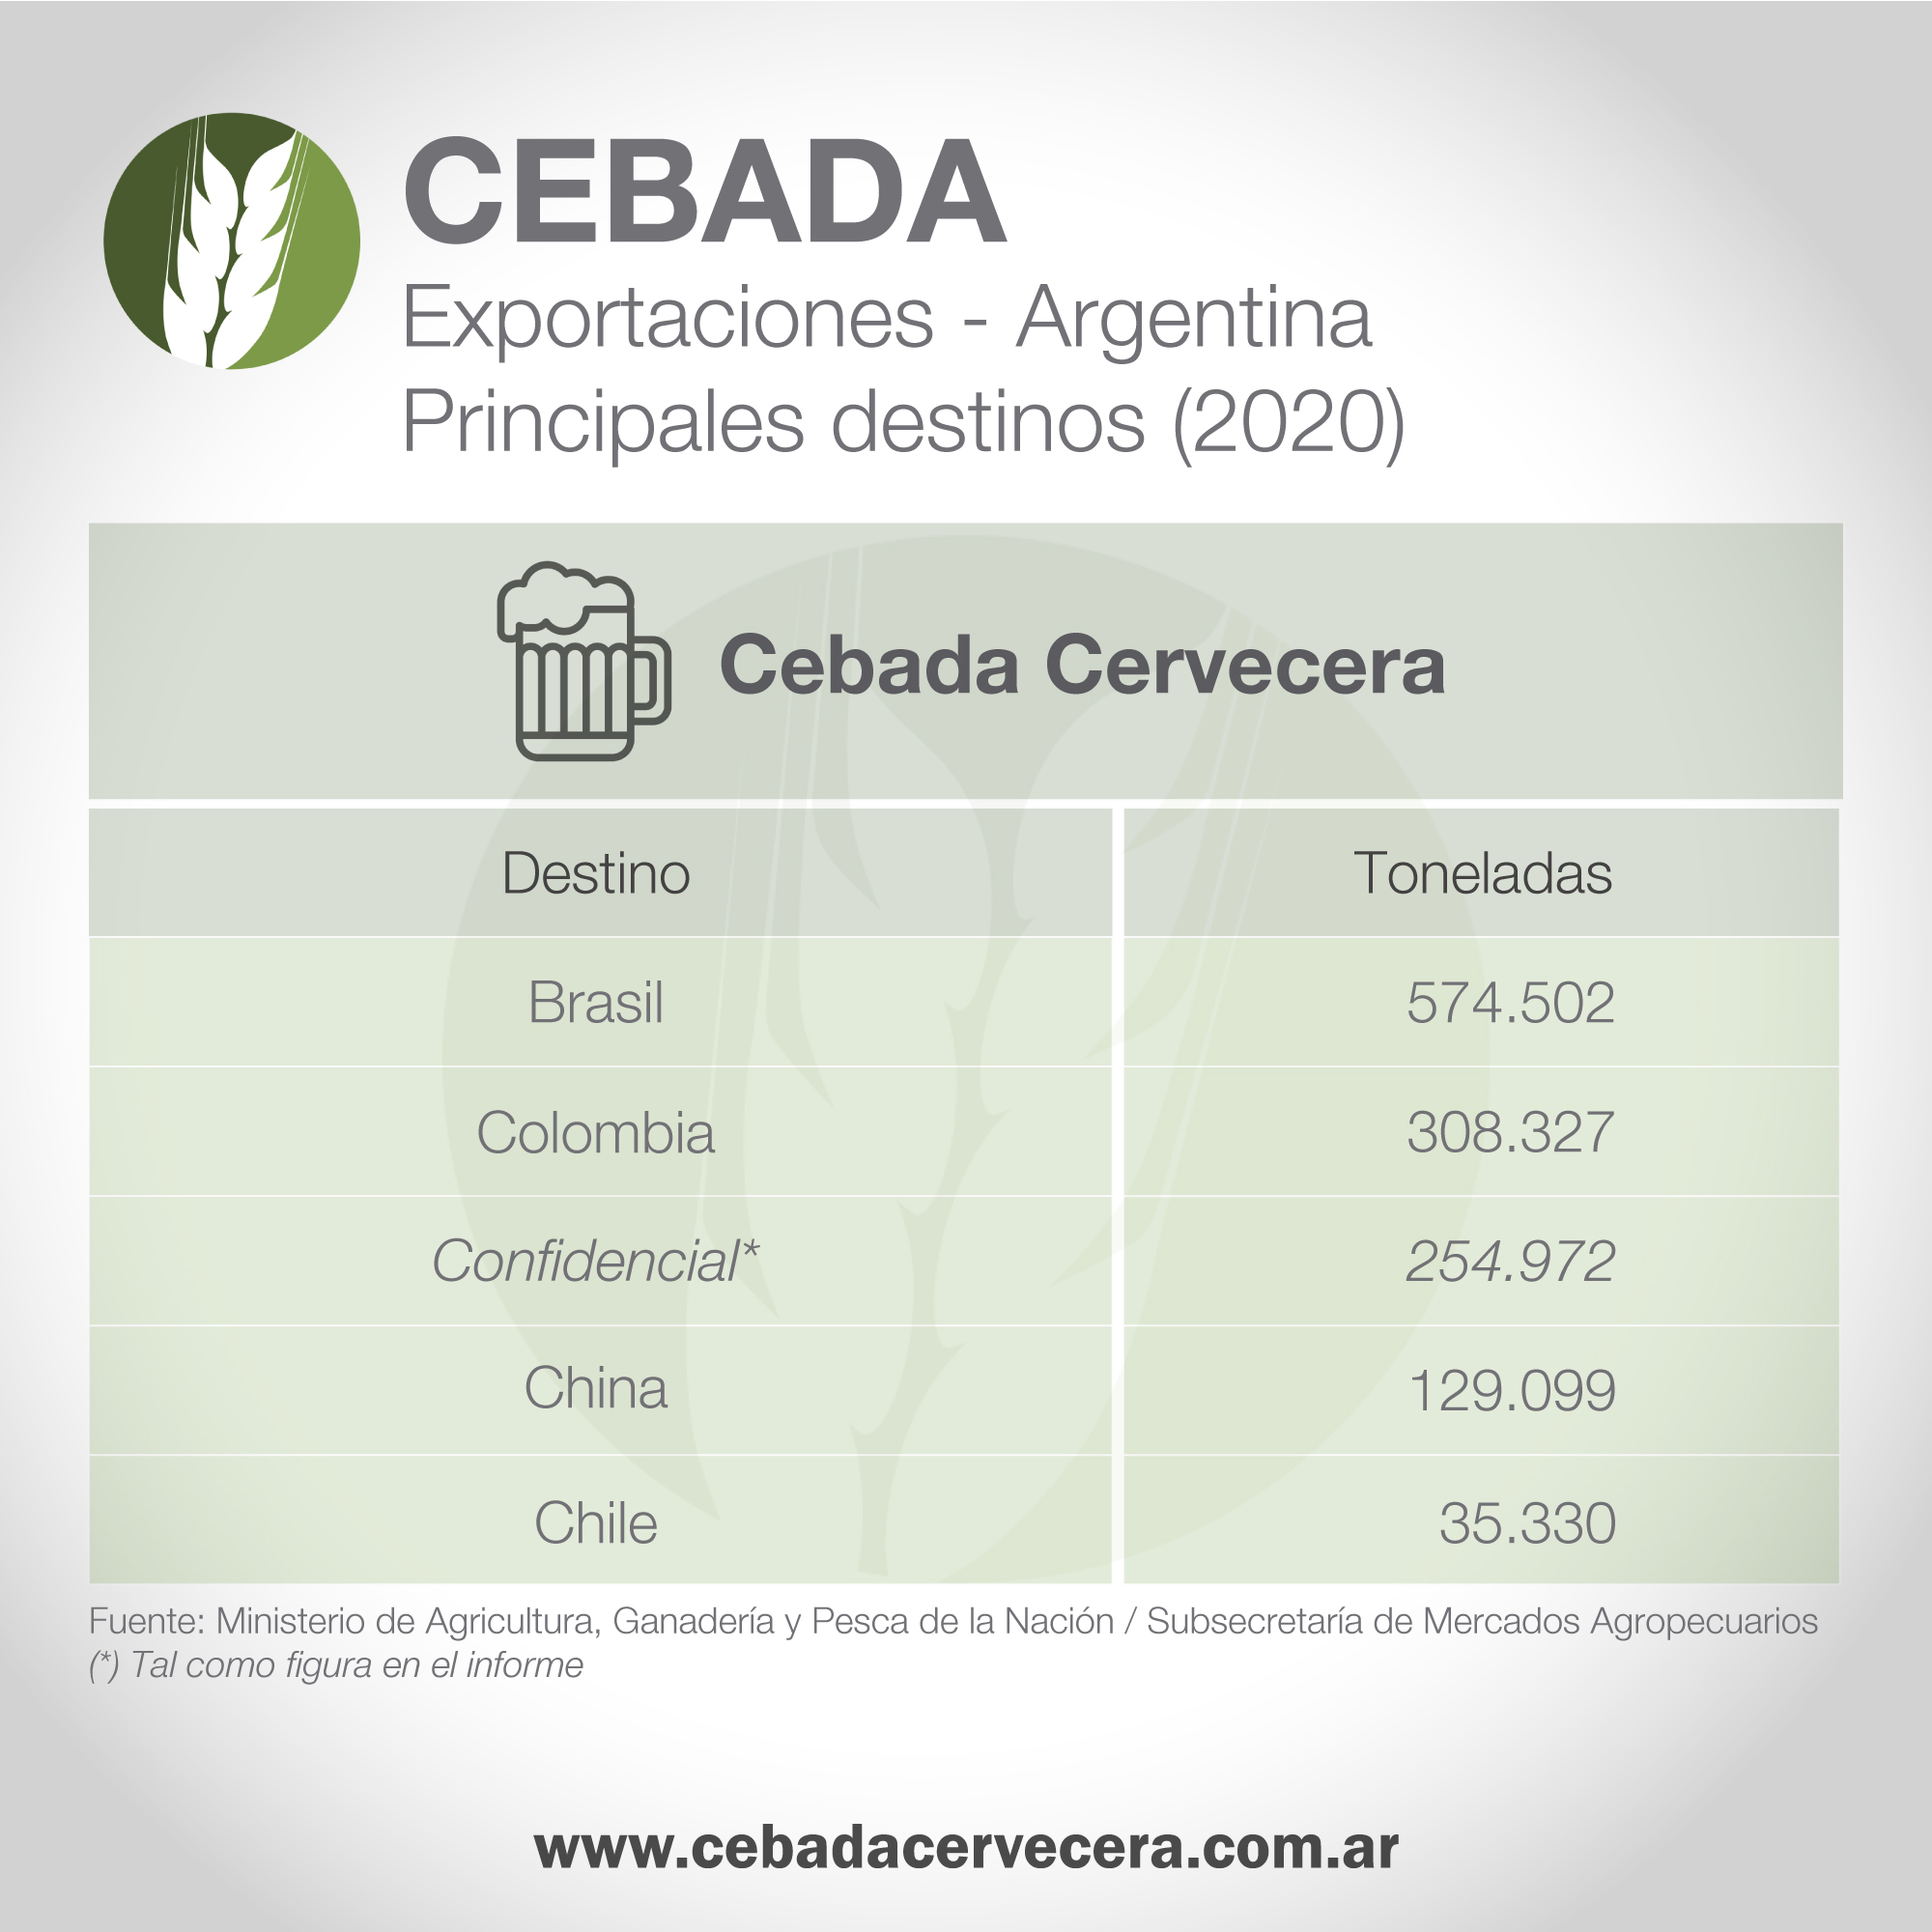 Cebada Cervecera - Exportaciones argentinas (2020)